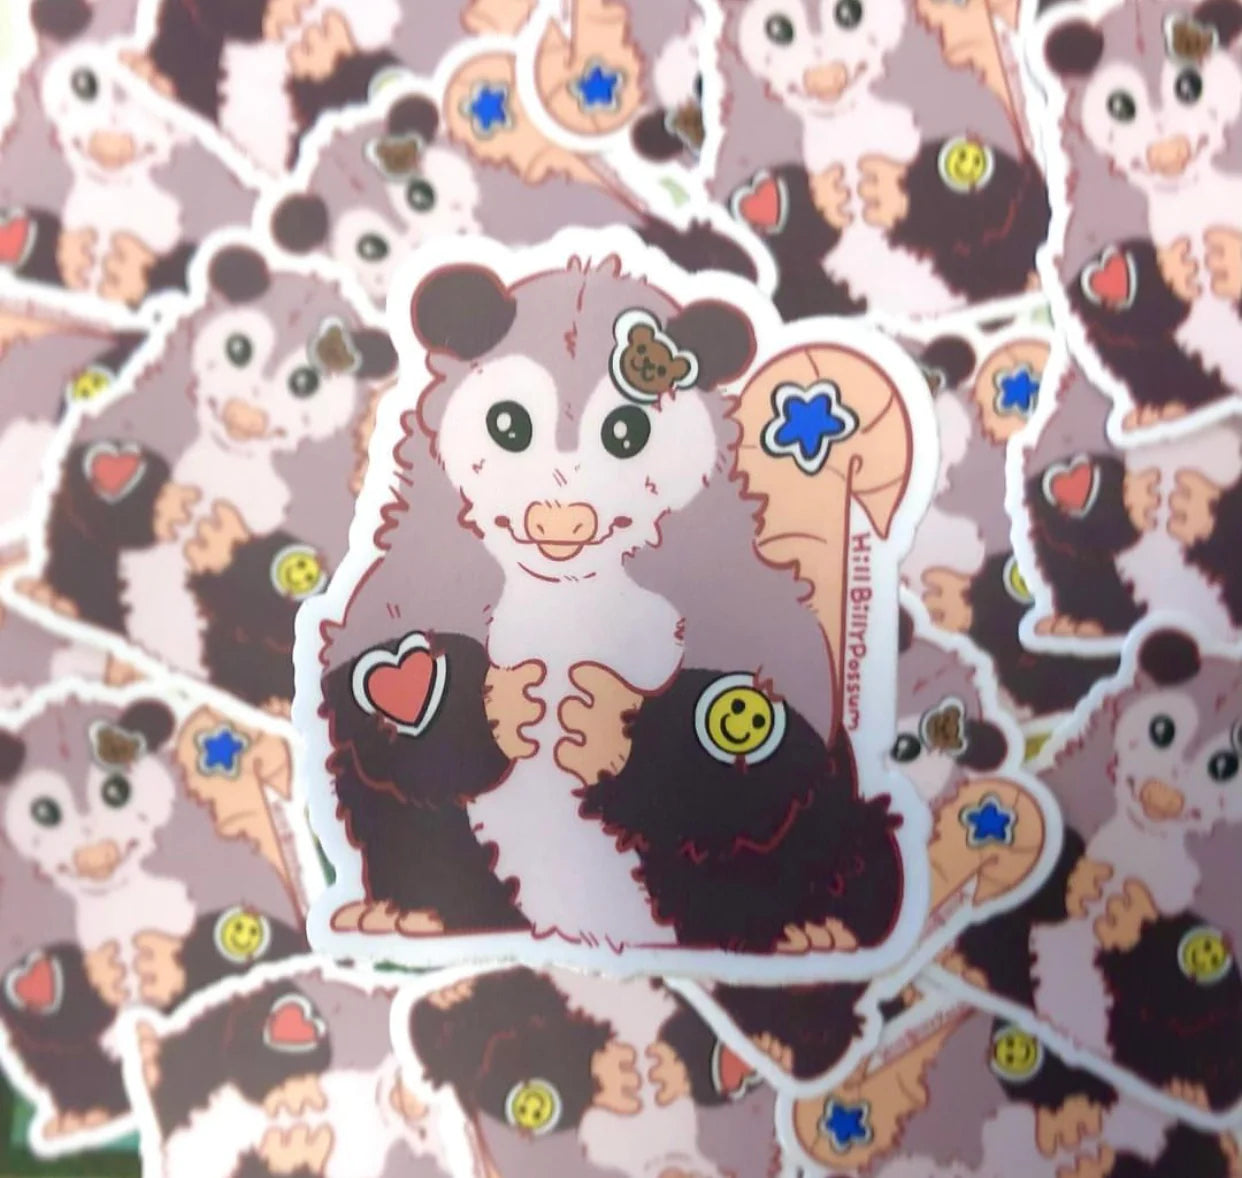 sticker possum